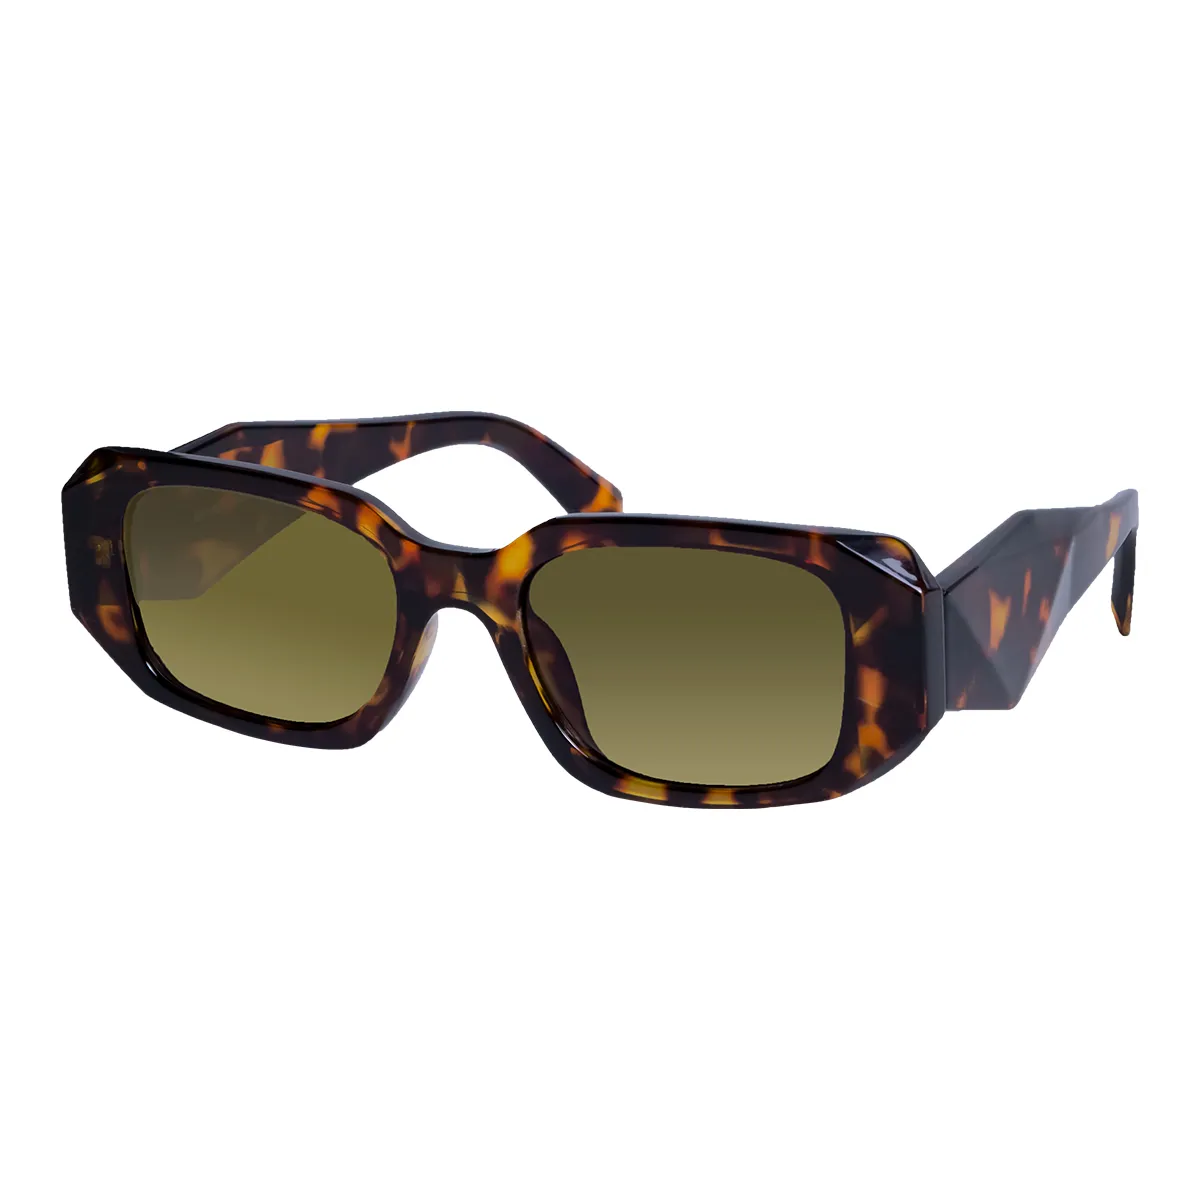 Arianwen -  Tortoisehell Sunglasses for Women